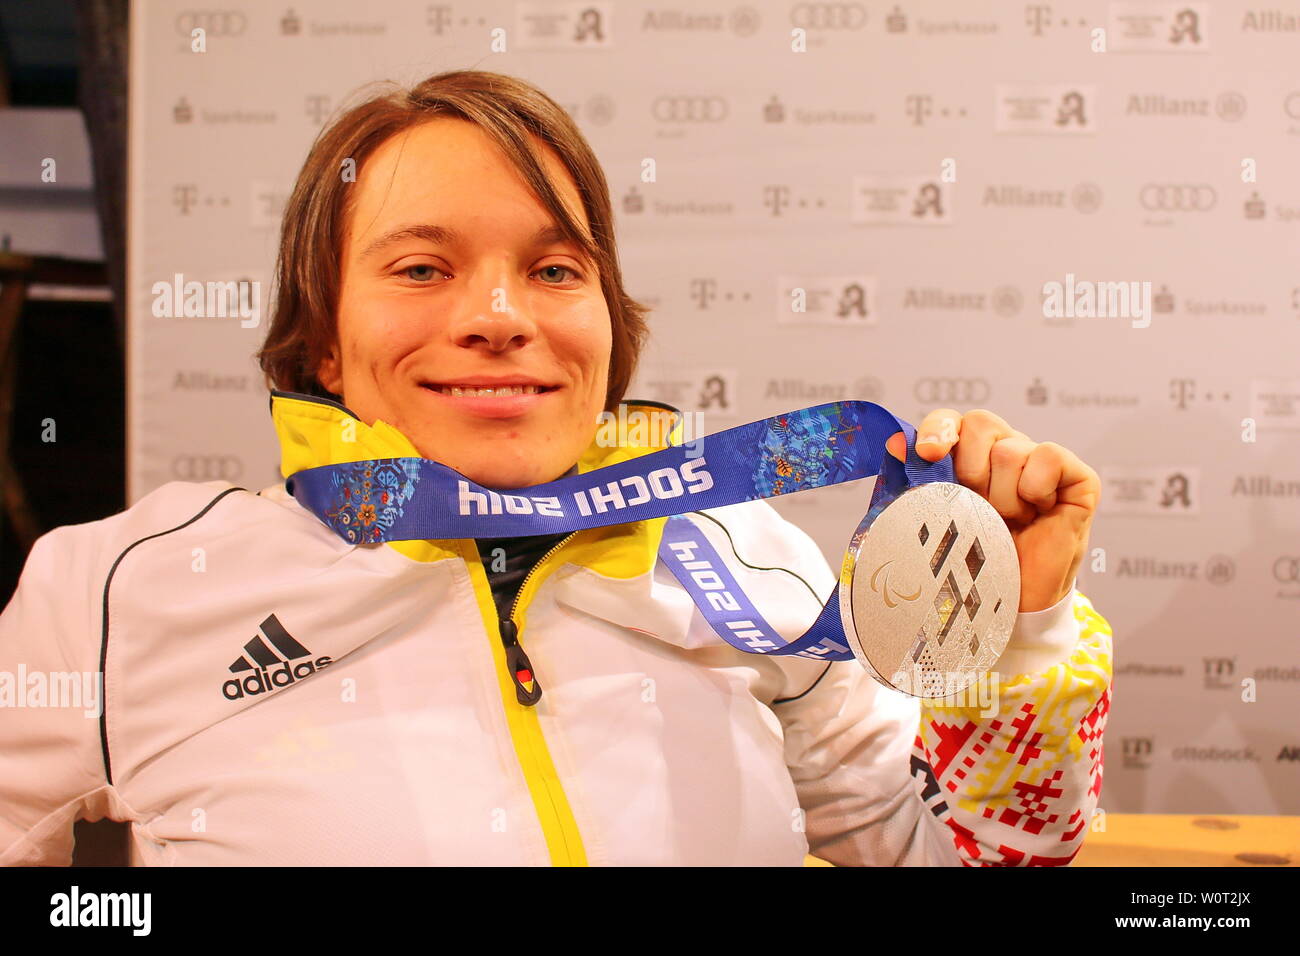 Stolz präsentiert Anja Wicker ihre im Silbermedaille Deutsches Haus - Paralympiques Sotschi 2014 / 2014 Jeux paralympiques d'hiver de Sotchi Banque D'Images